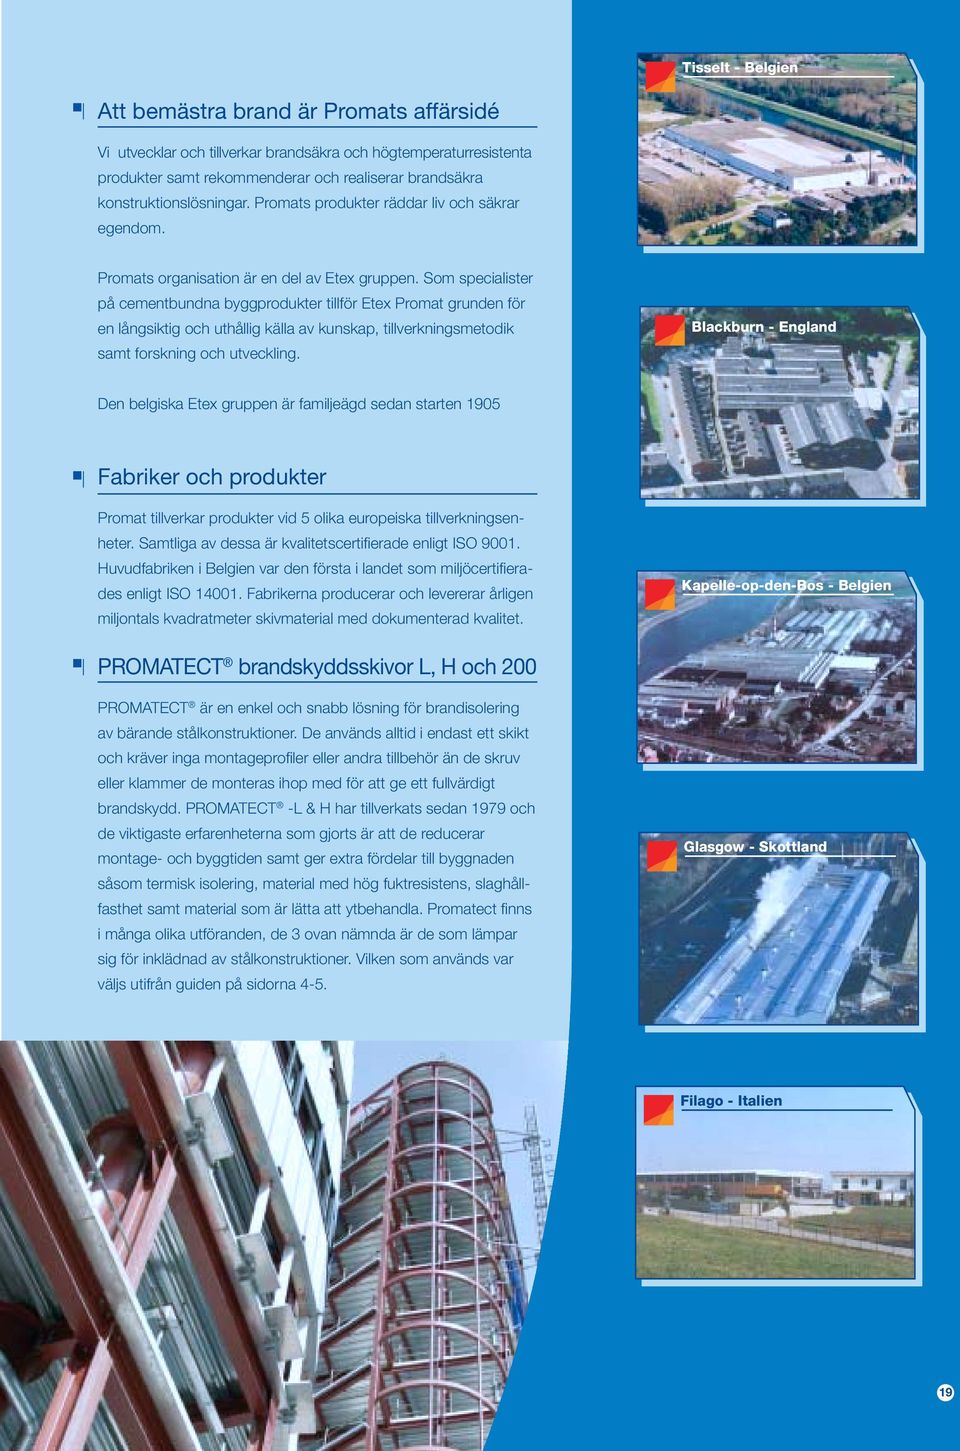 Som specialister på cementbundna byggprodukter tillför Etex Promat grunden för en långsiktig och uthållig källa av kunskap, tillverkningsmetodik samt forskning och utveckling.